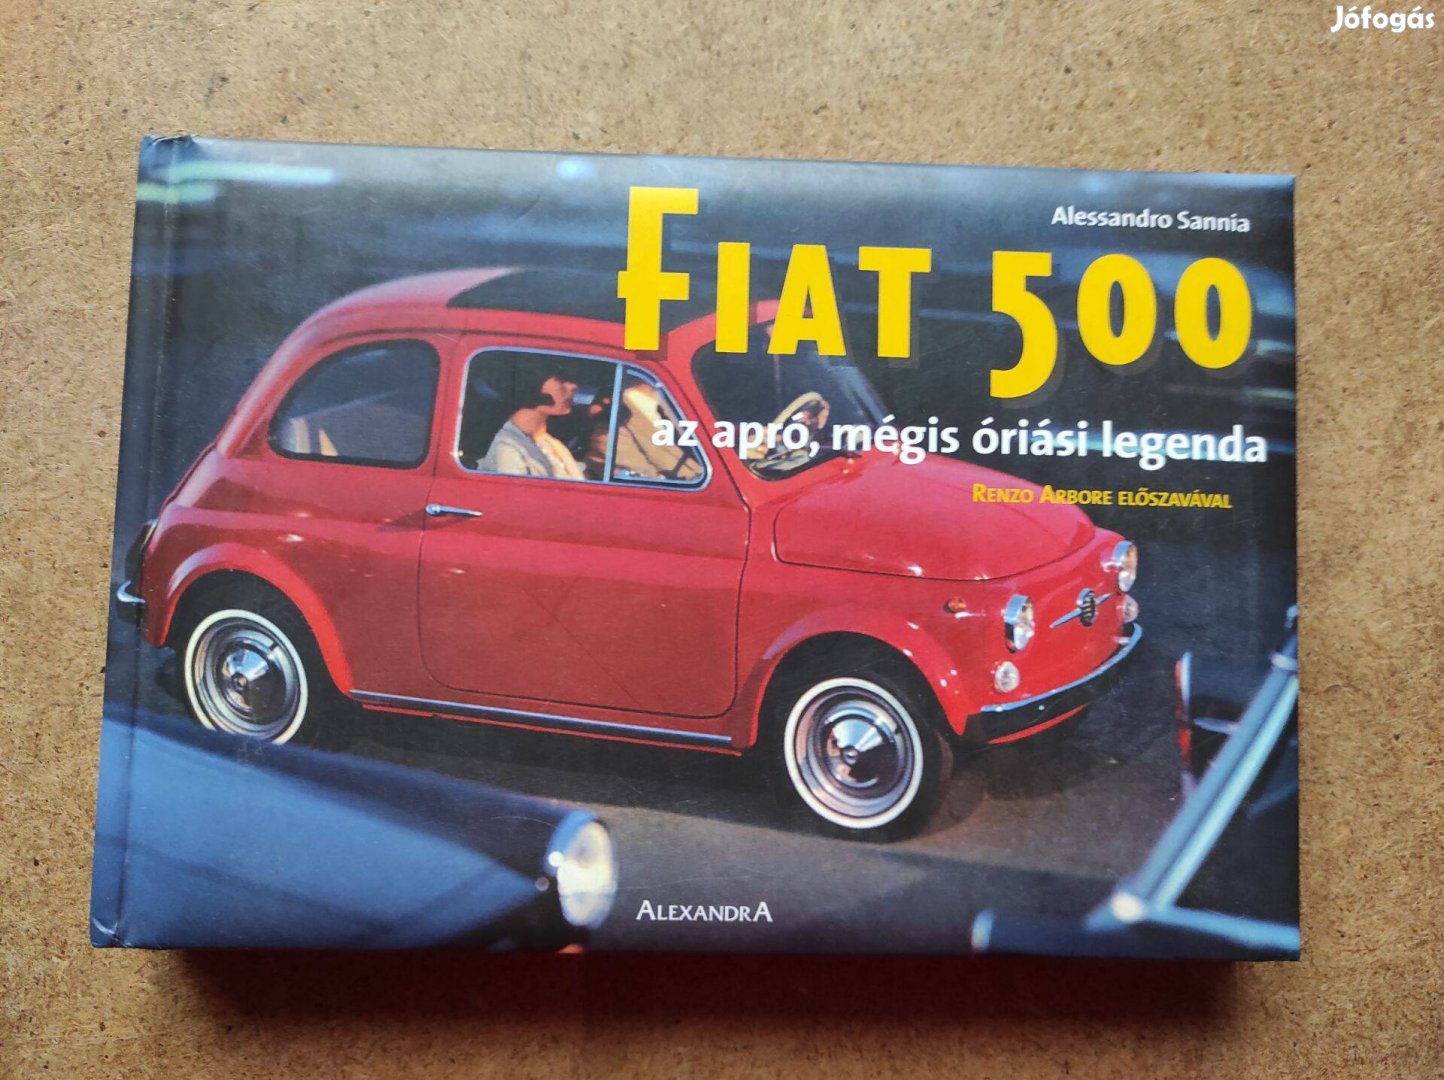 Fiat 500 Az apró, mégis órási legenda könyv